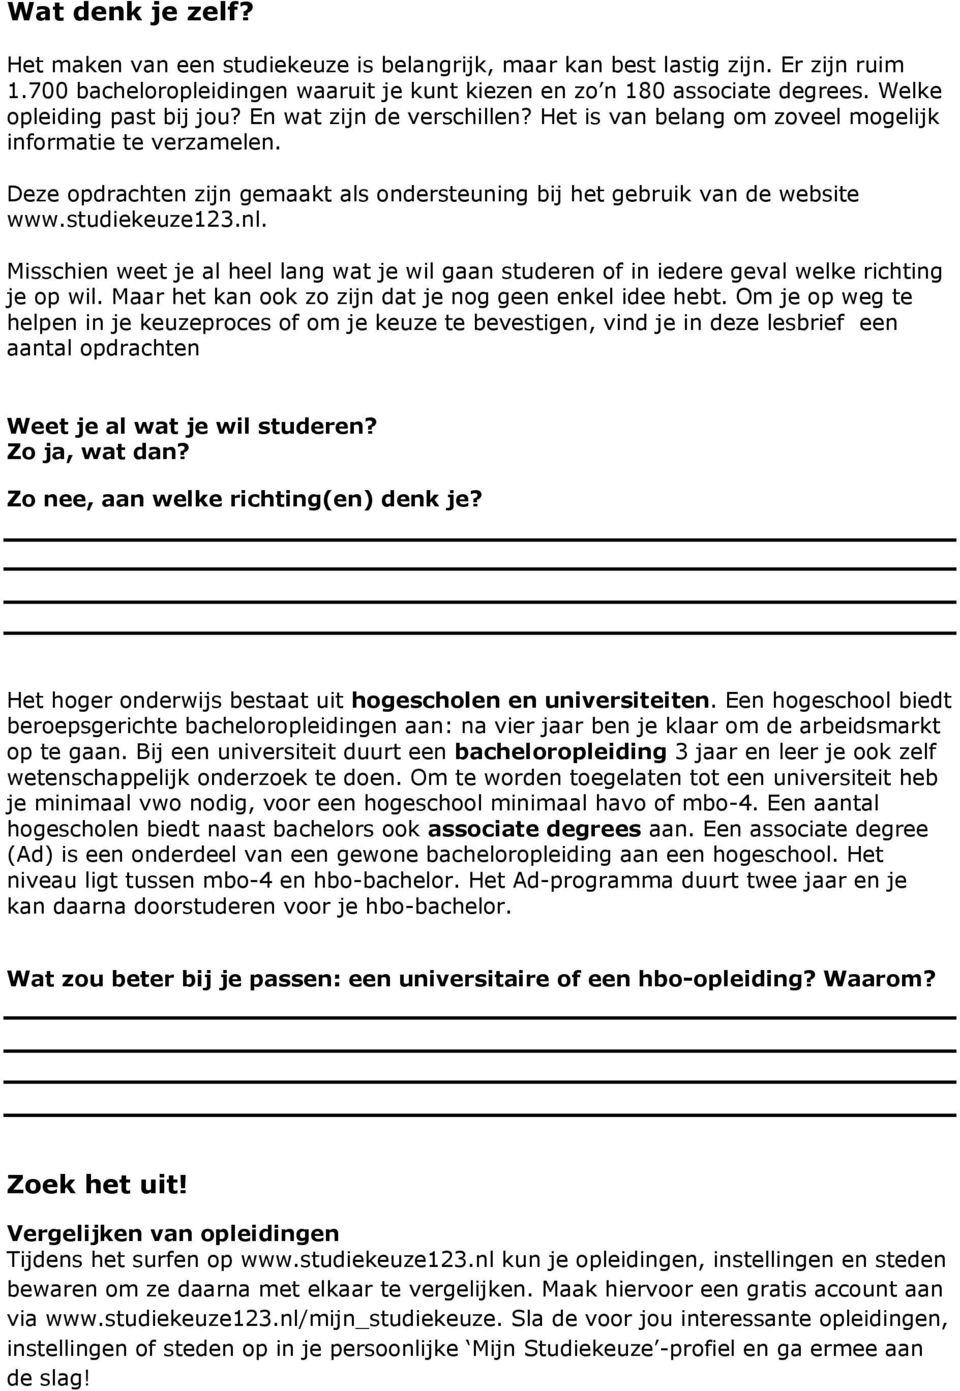 Deze opdrachten zijn gemaakt als ondersteuning bij het gebruik van de website www.studiekeuze123.nl.